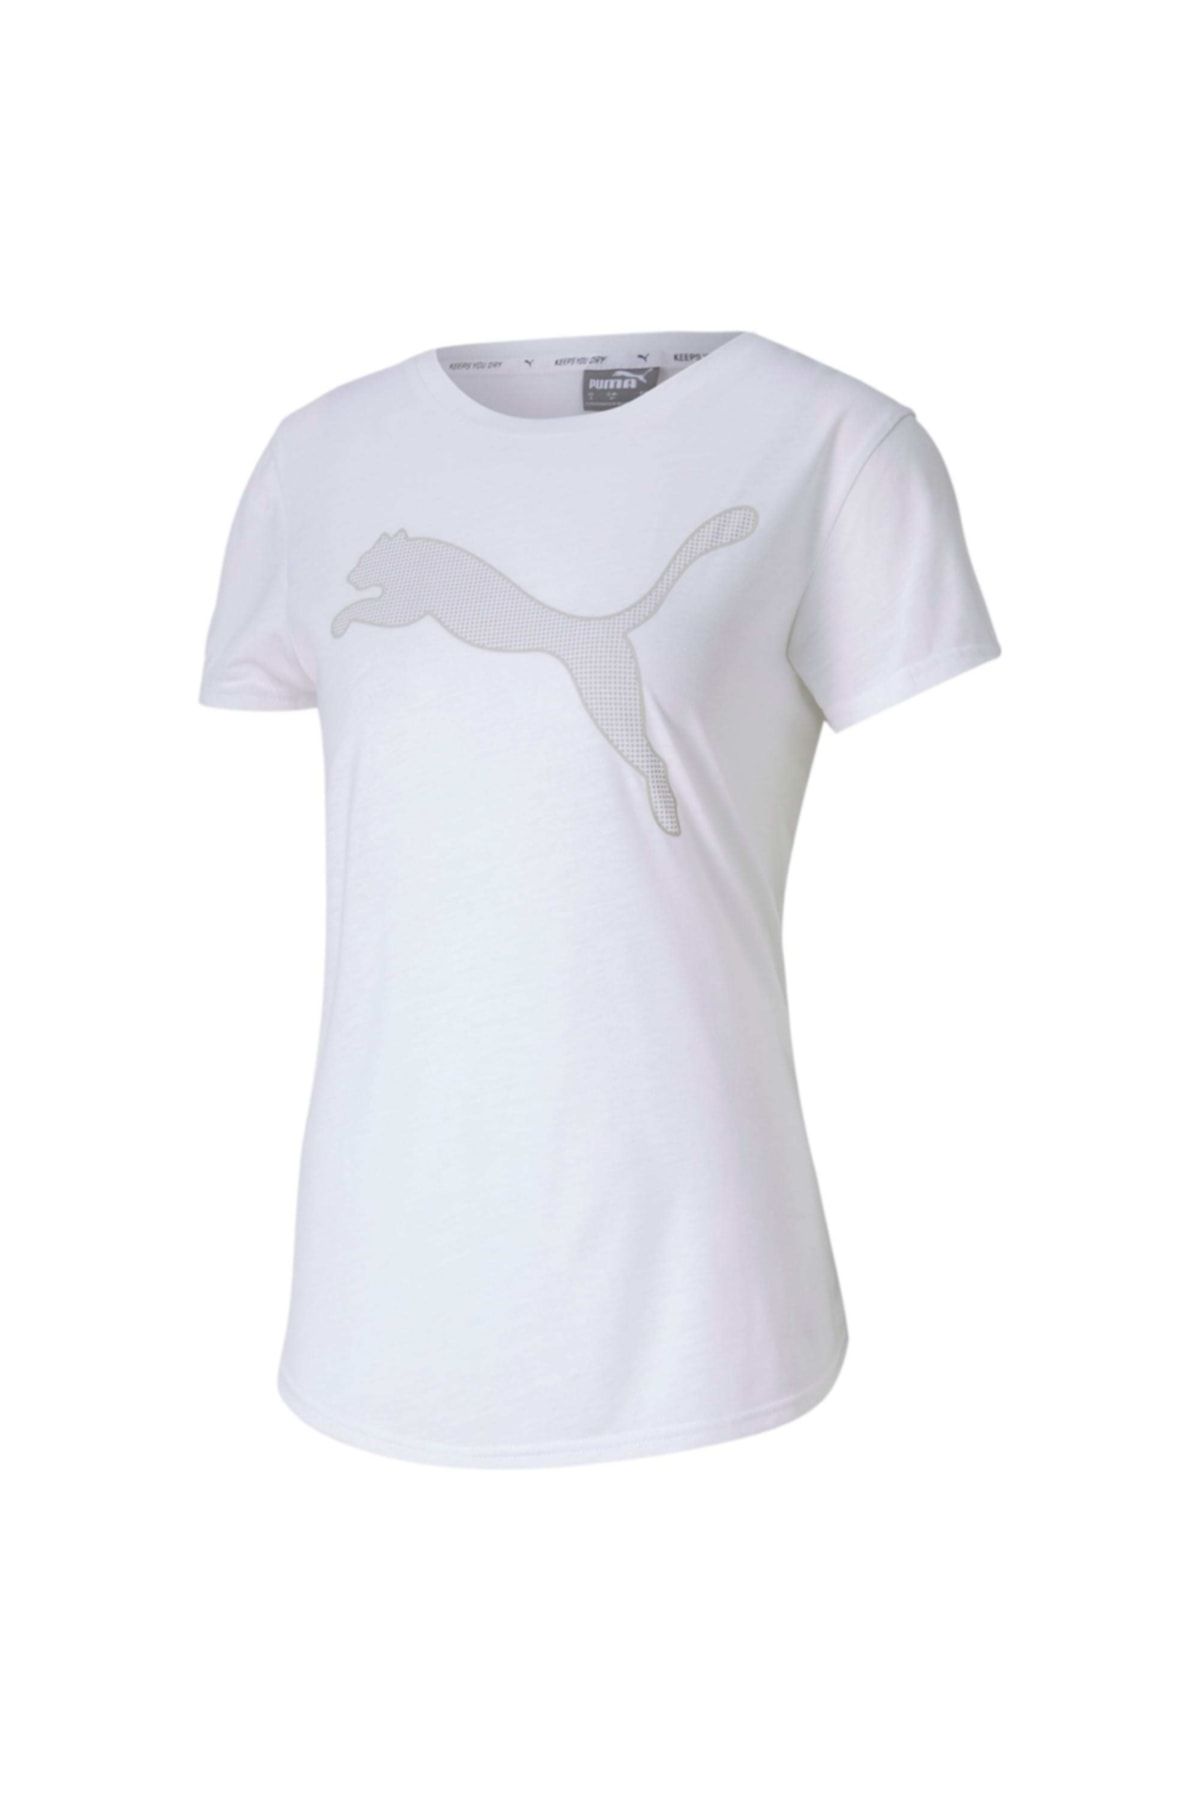 Puma EVOSTRIPE TEE Beyaz Kadın T-Shirt 100583655